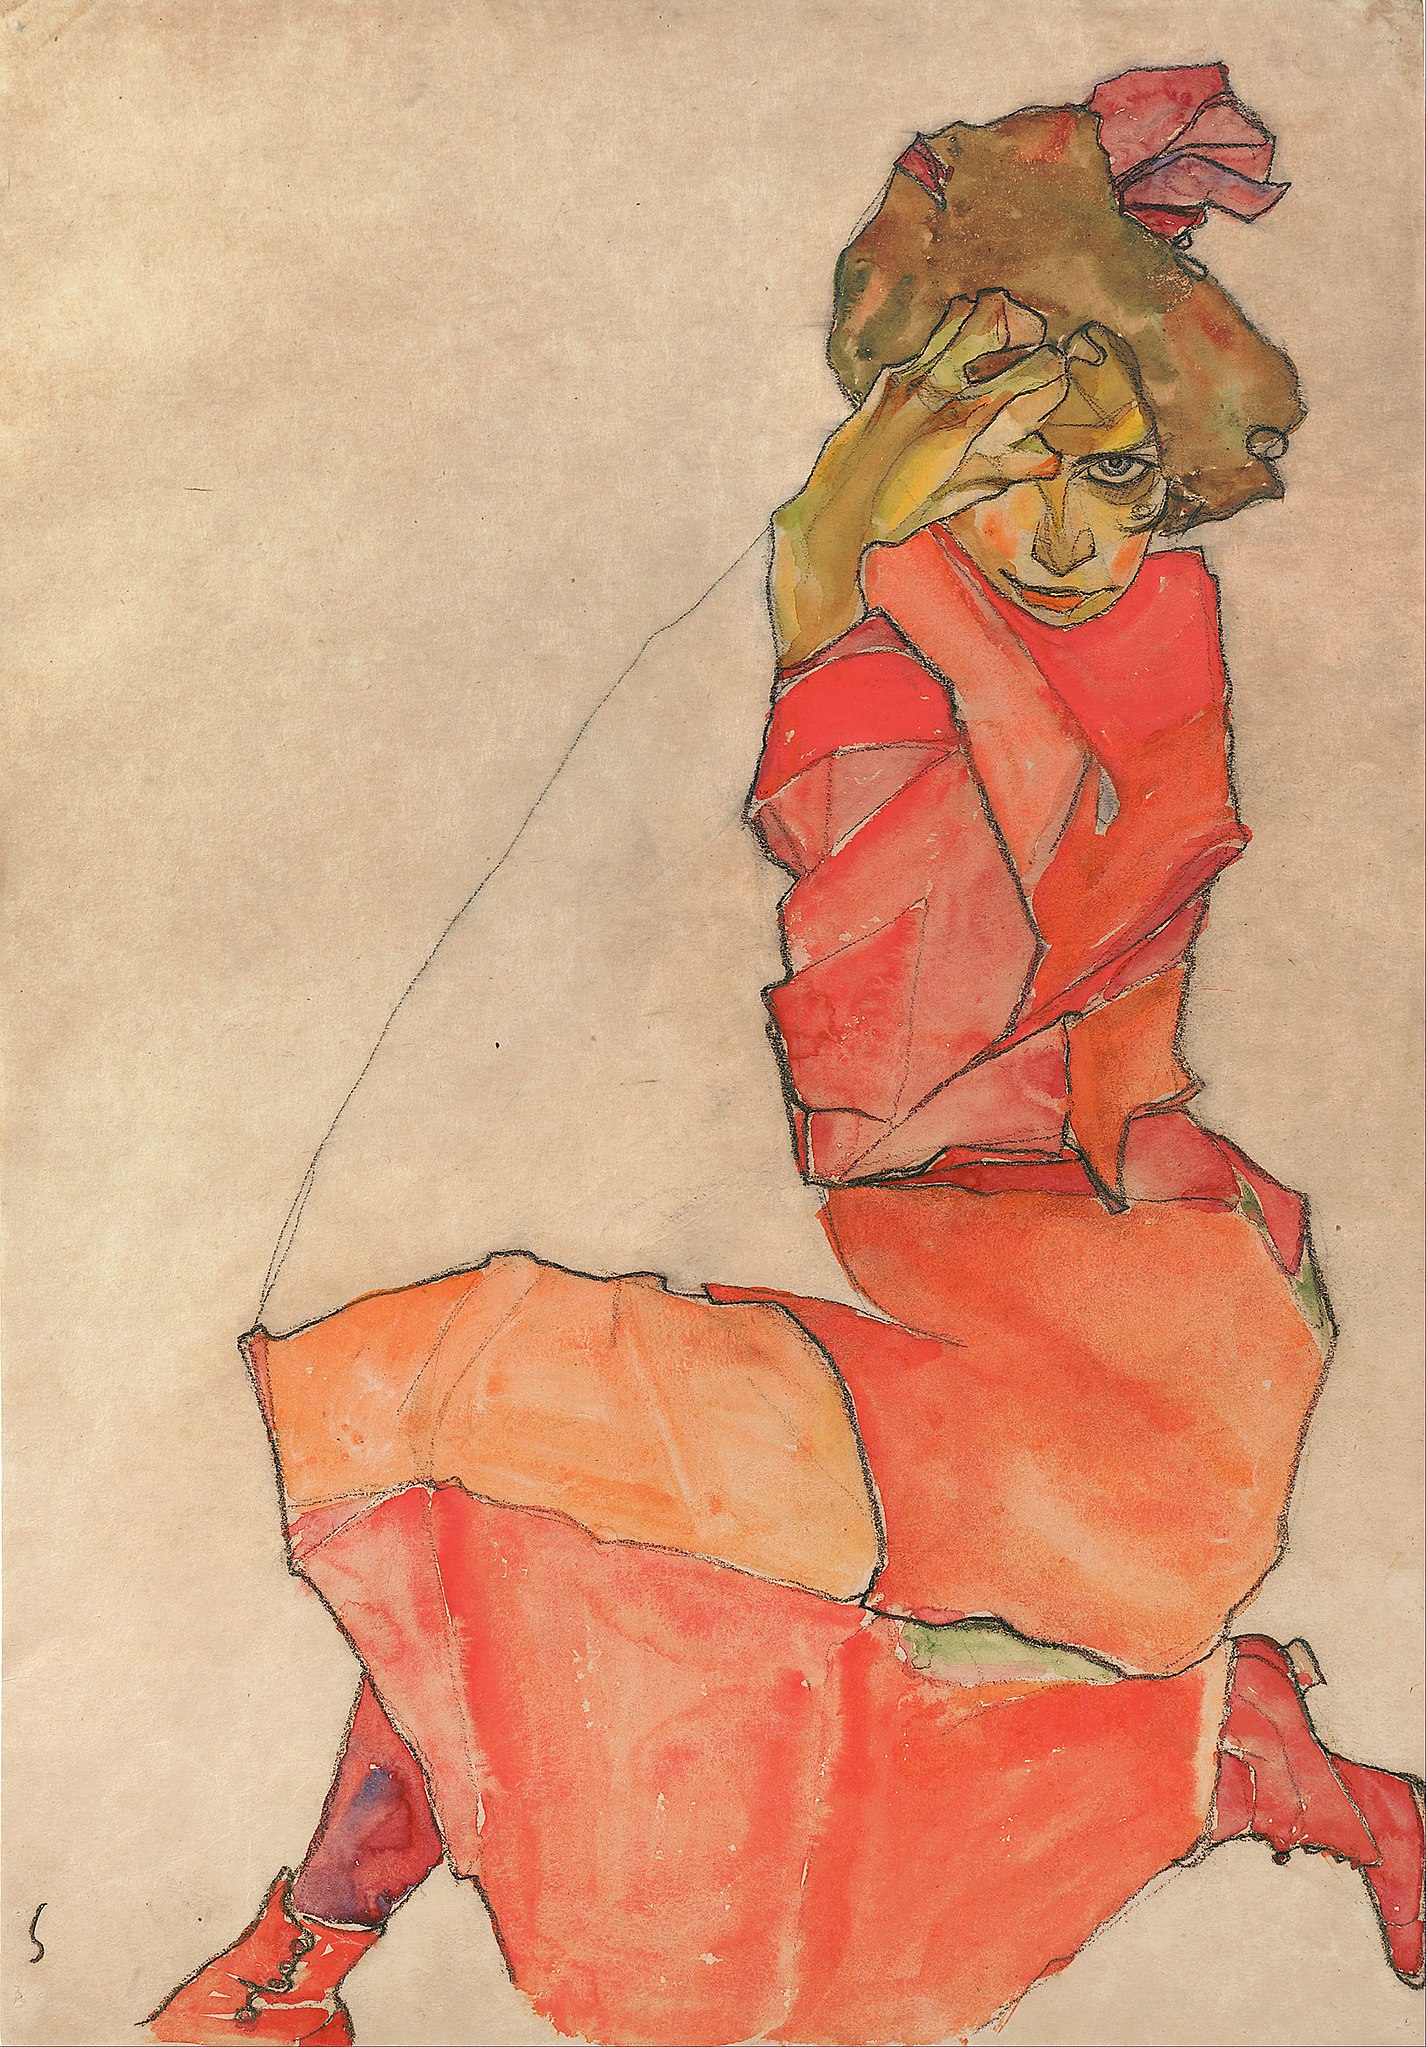 Kneeling Female in Orange-Red Dress by Egon Schiele - 1910 - 44.6 x 31 cm Leopold Museum